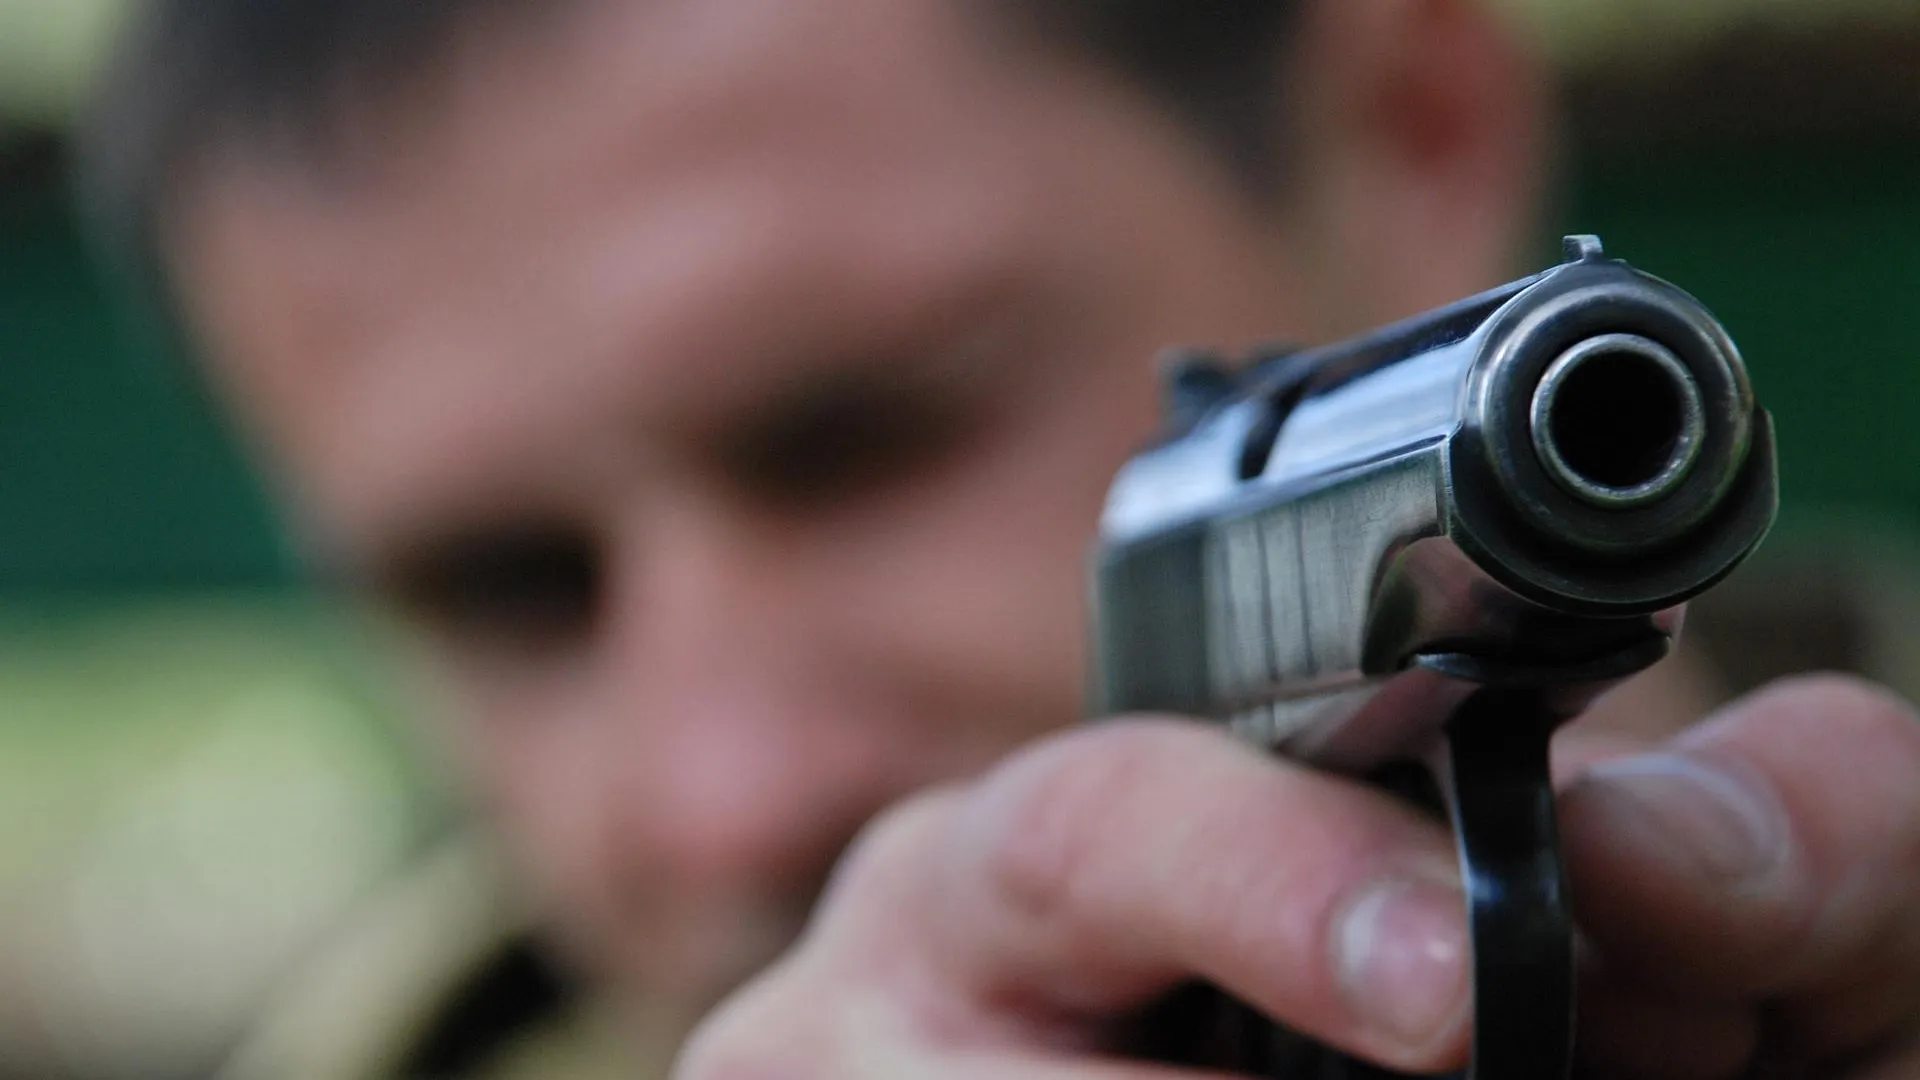 Двое жителей Чечни задержаны в Малаховке на иномарке с оружием — ГУМВД